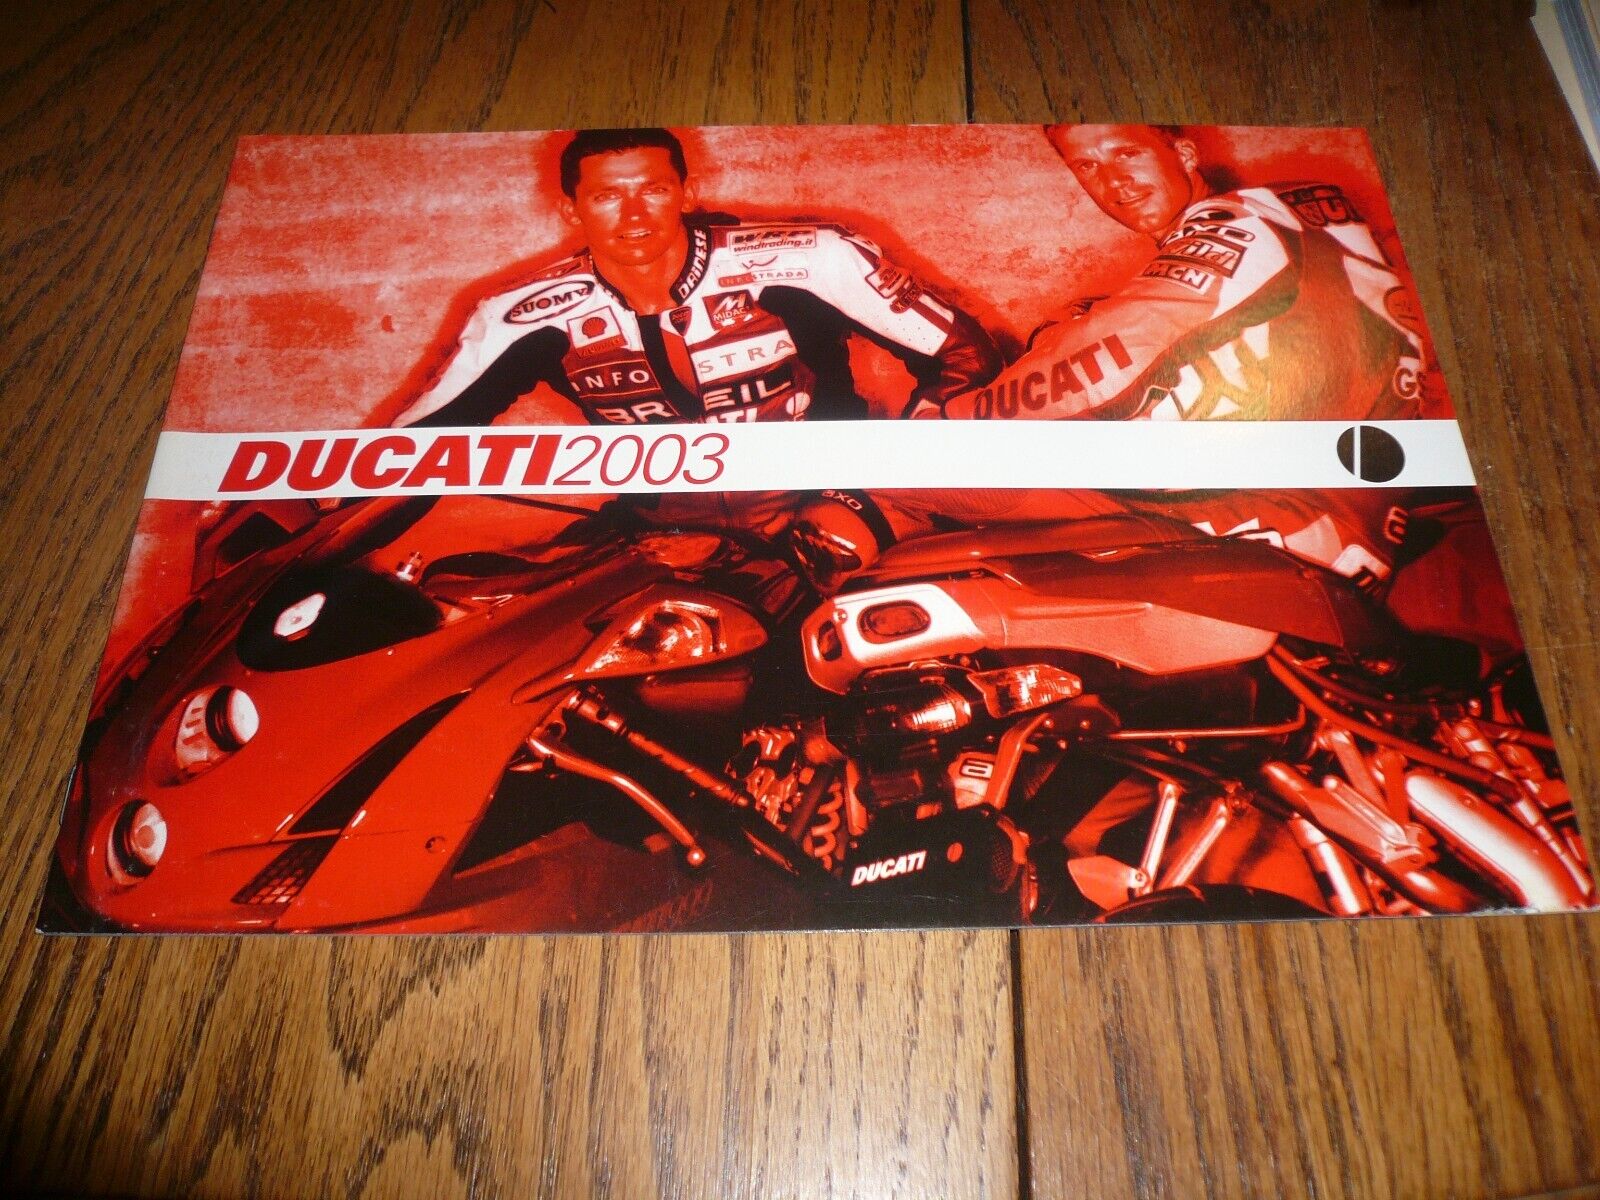 2003 Ducati Prestige Motorcycle Sales Brochure - Vintage